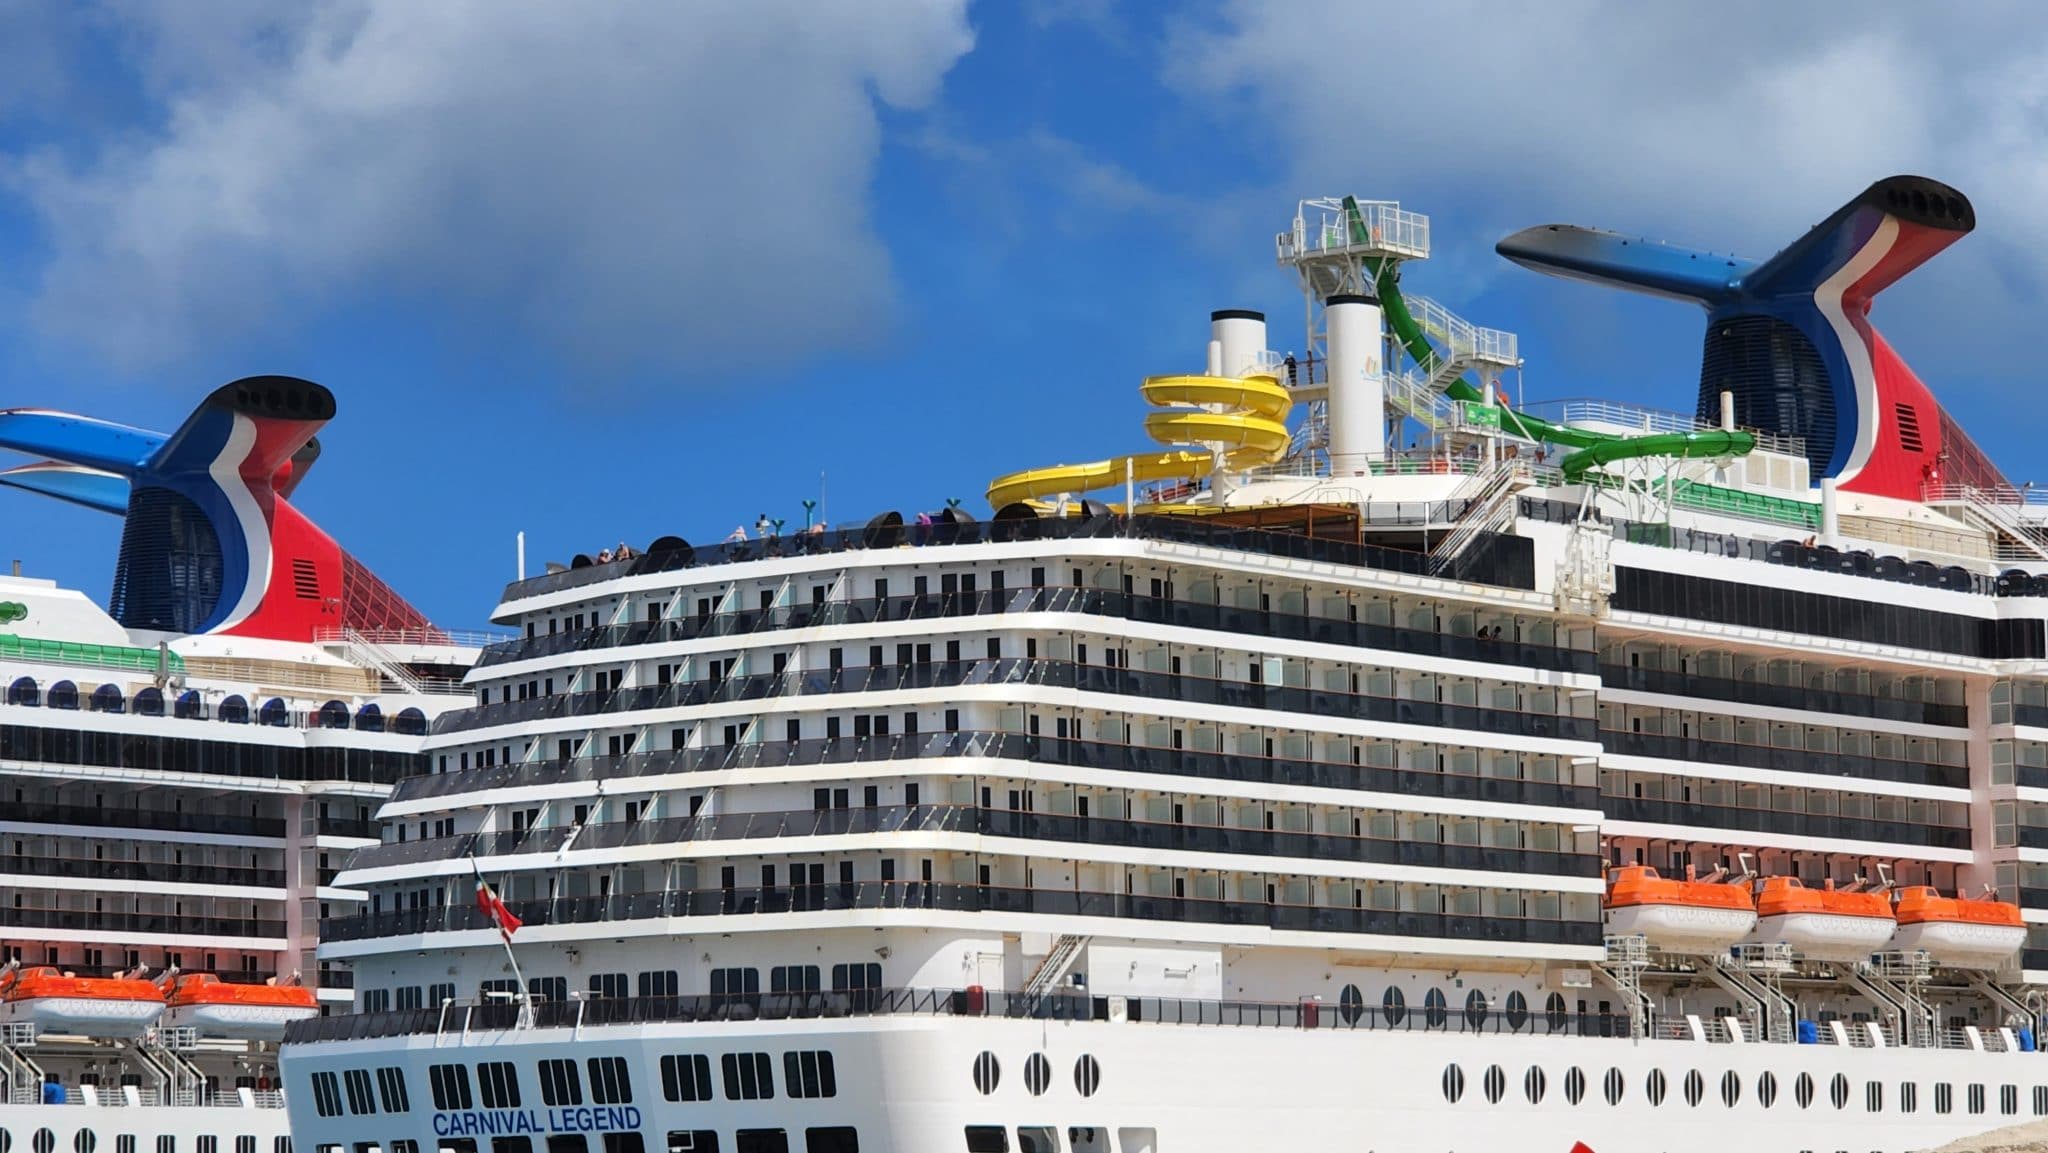 Carnival cruise ships